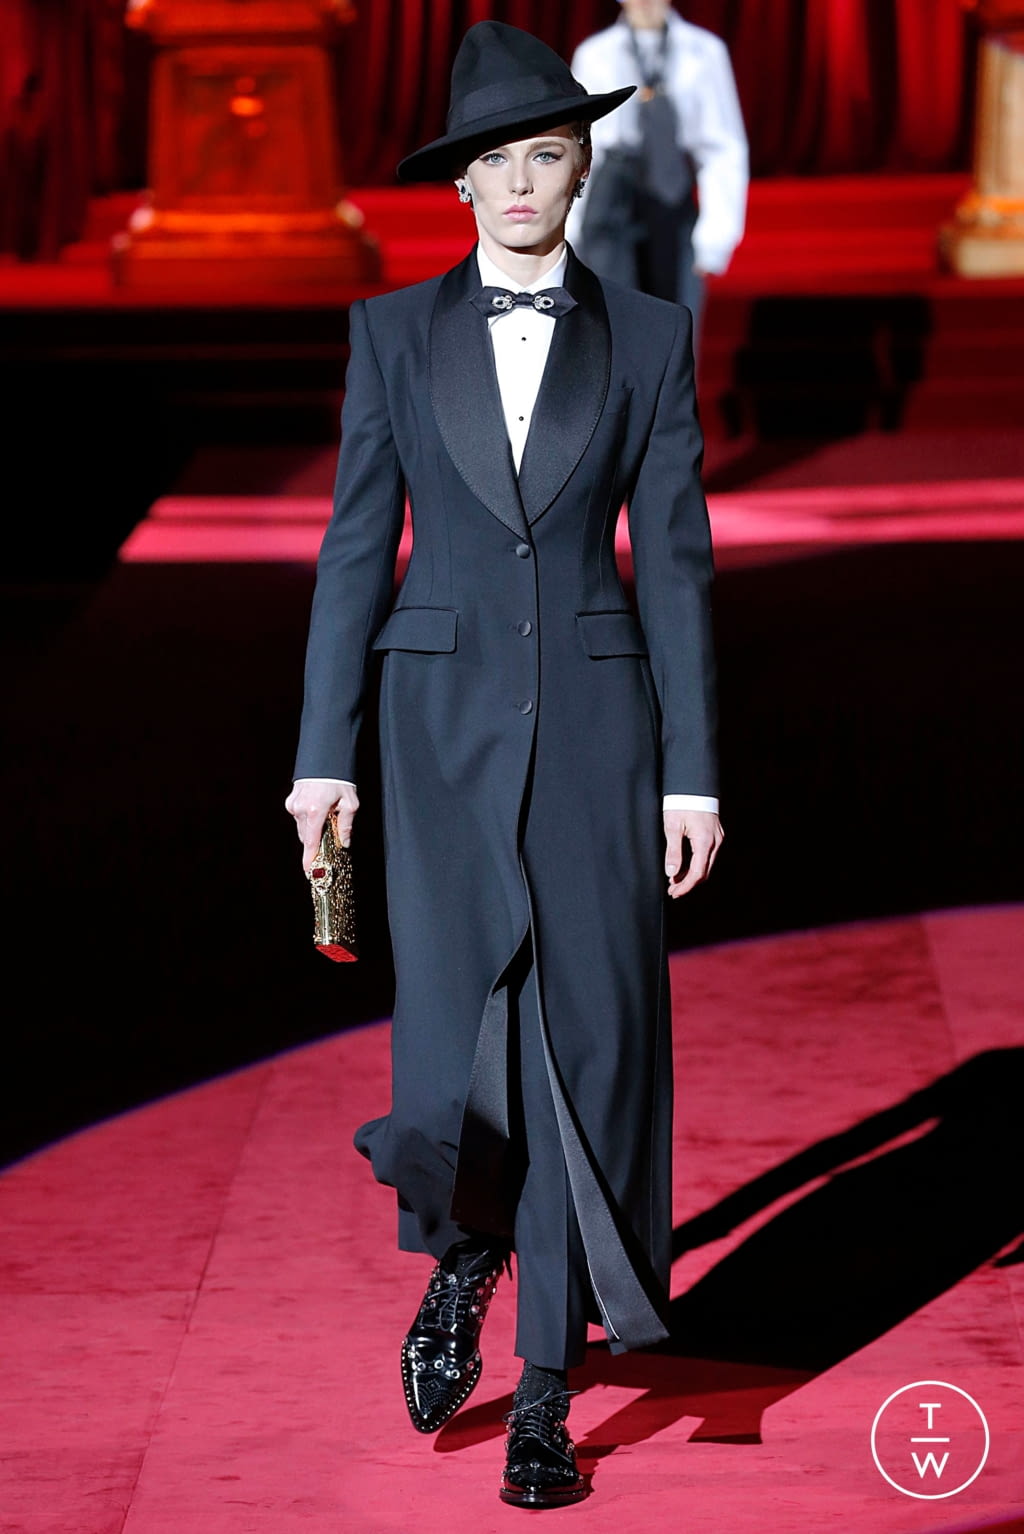 Dolce & Gabbana FW19 womenswear #7 - Tagwalk: The Fashion Search Engine